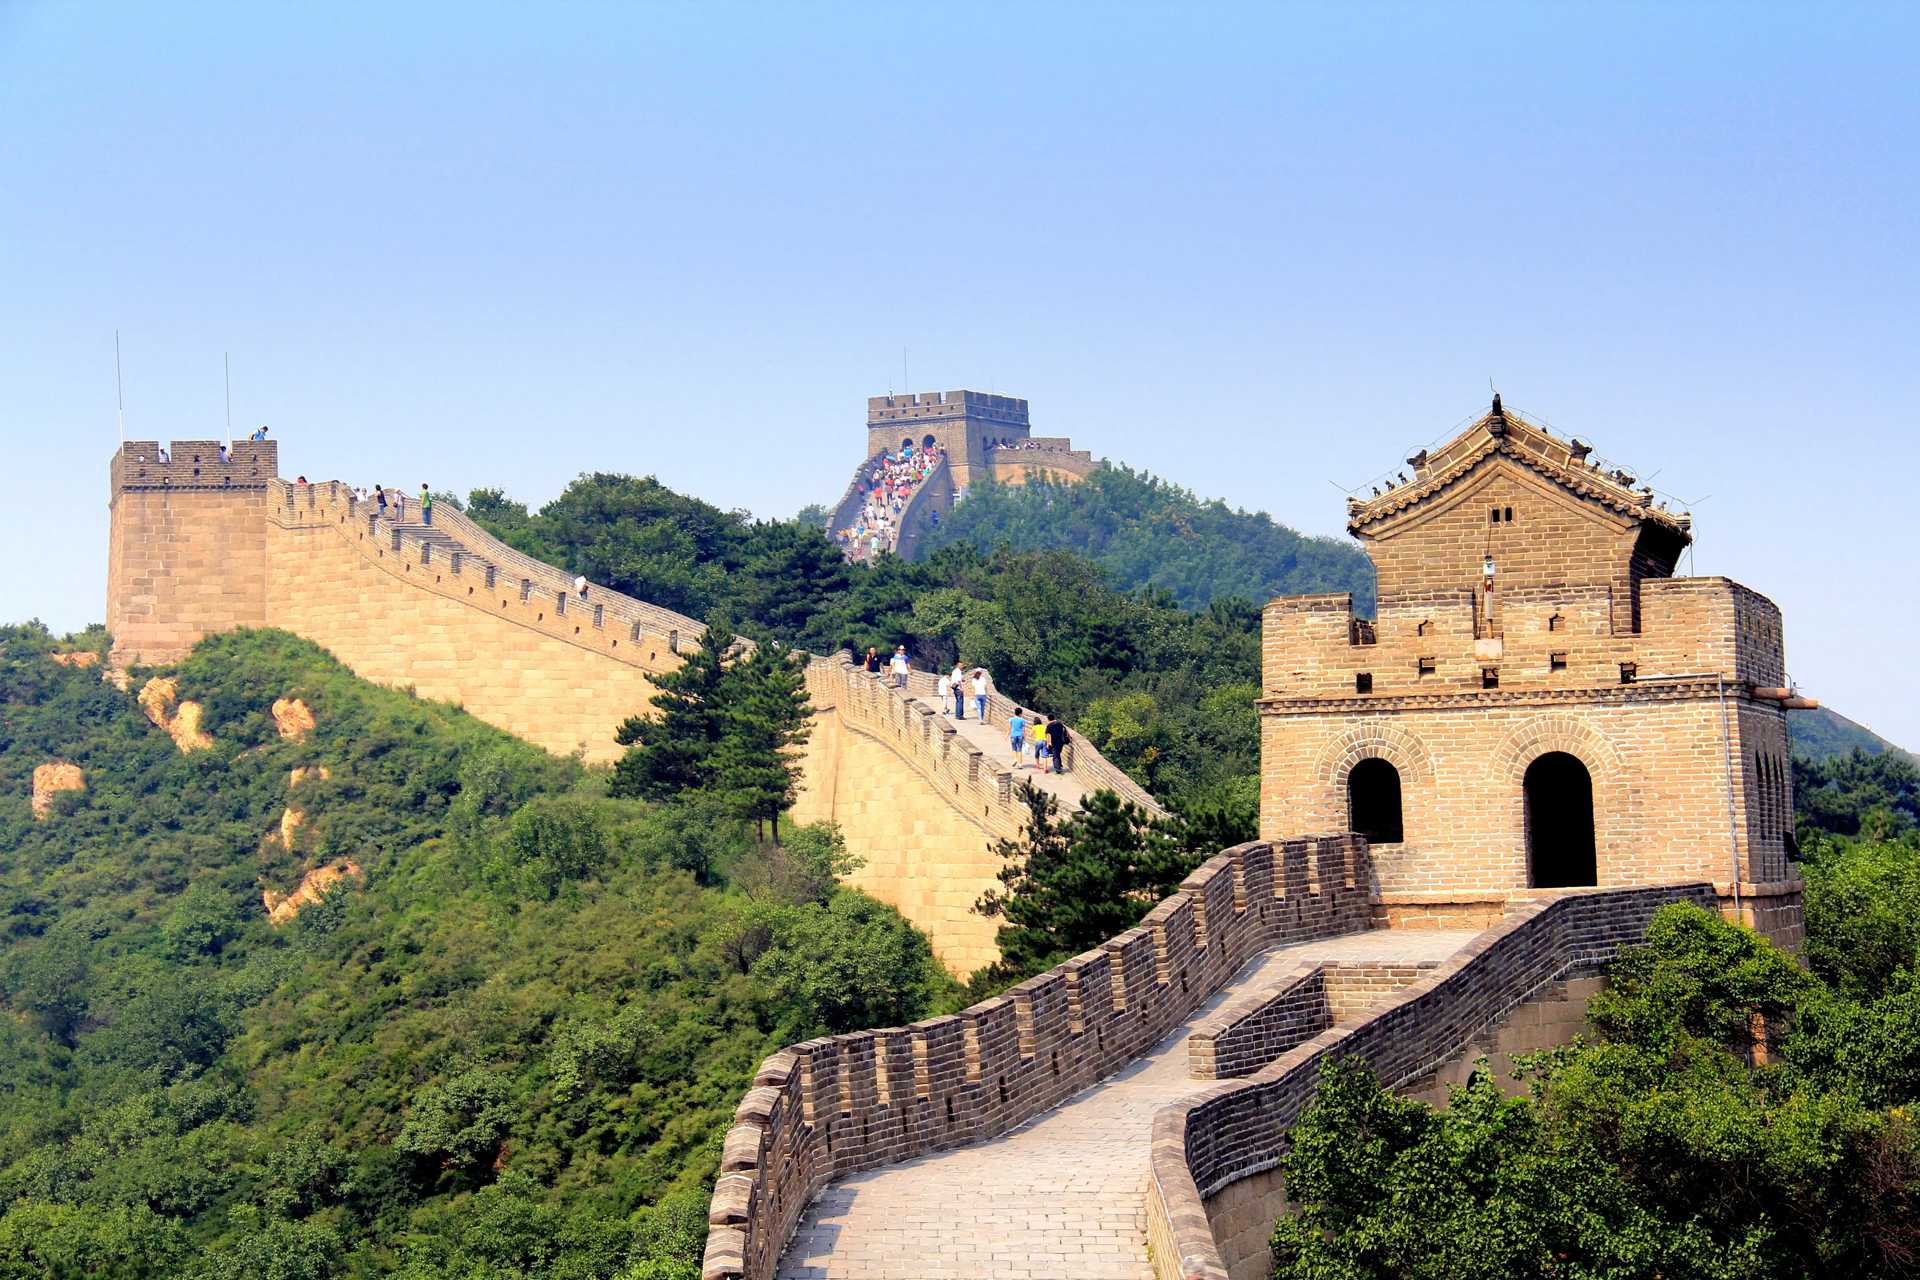  Vista panoramica de la Gran Muralla china_Ejemplo de sistema contructivo tradicional militar en base a piedra y ladrillo